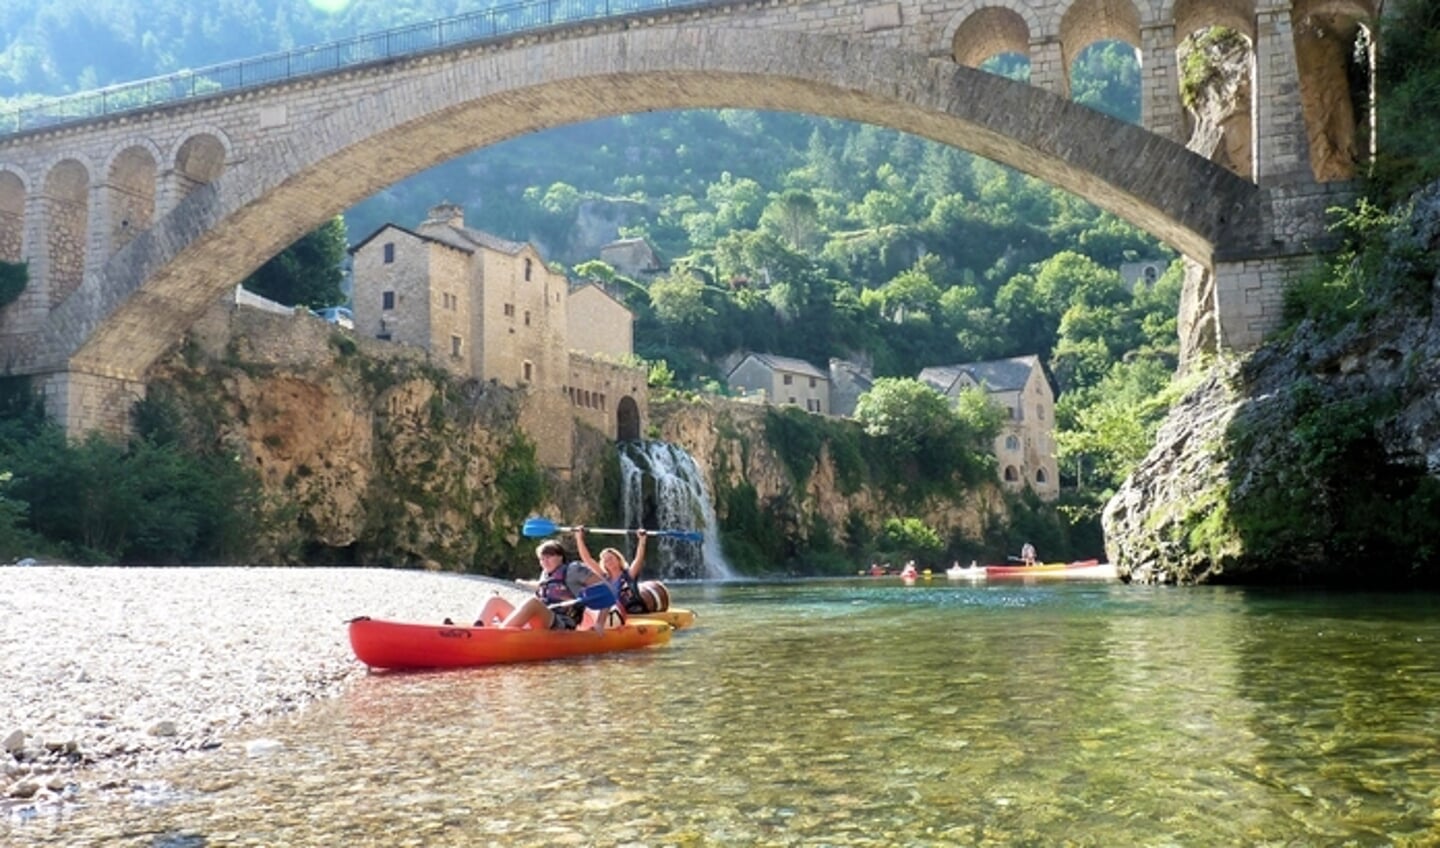 Jim en Wilma kanoen op de Tarn, een mooi riviertje in midden Frankrijk.